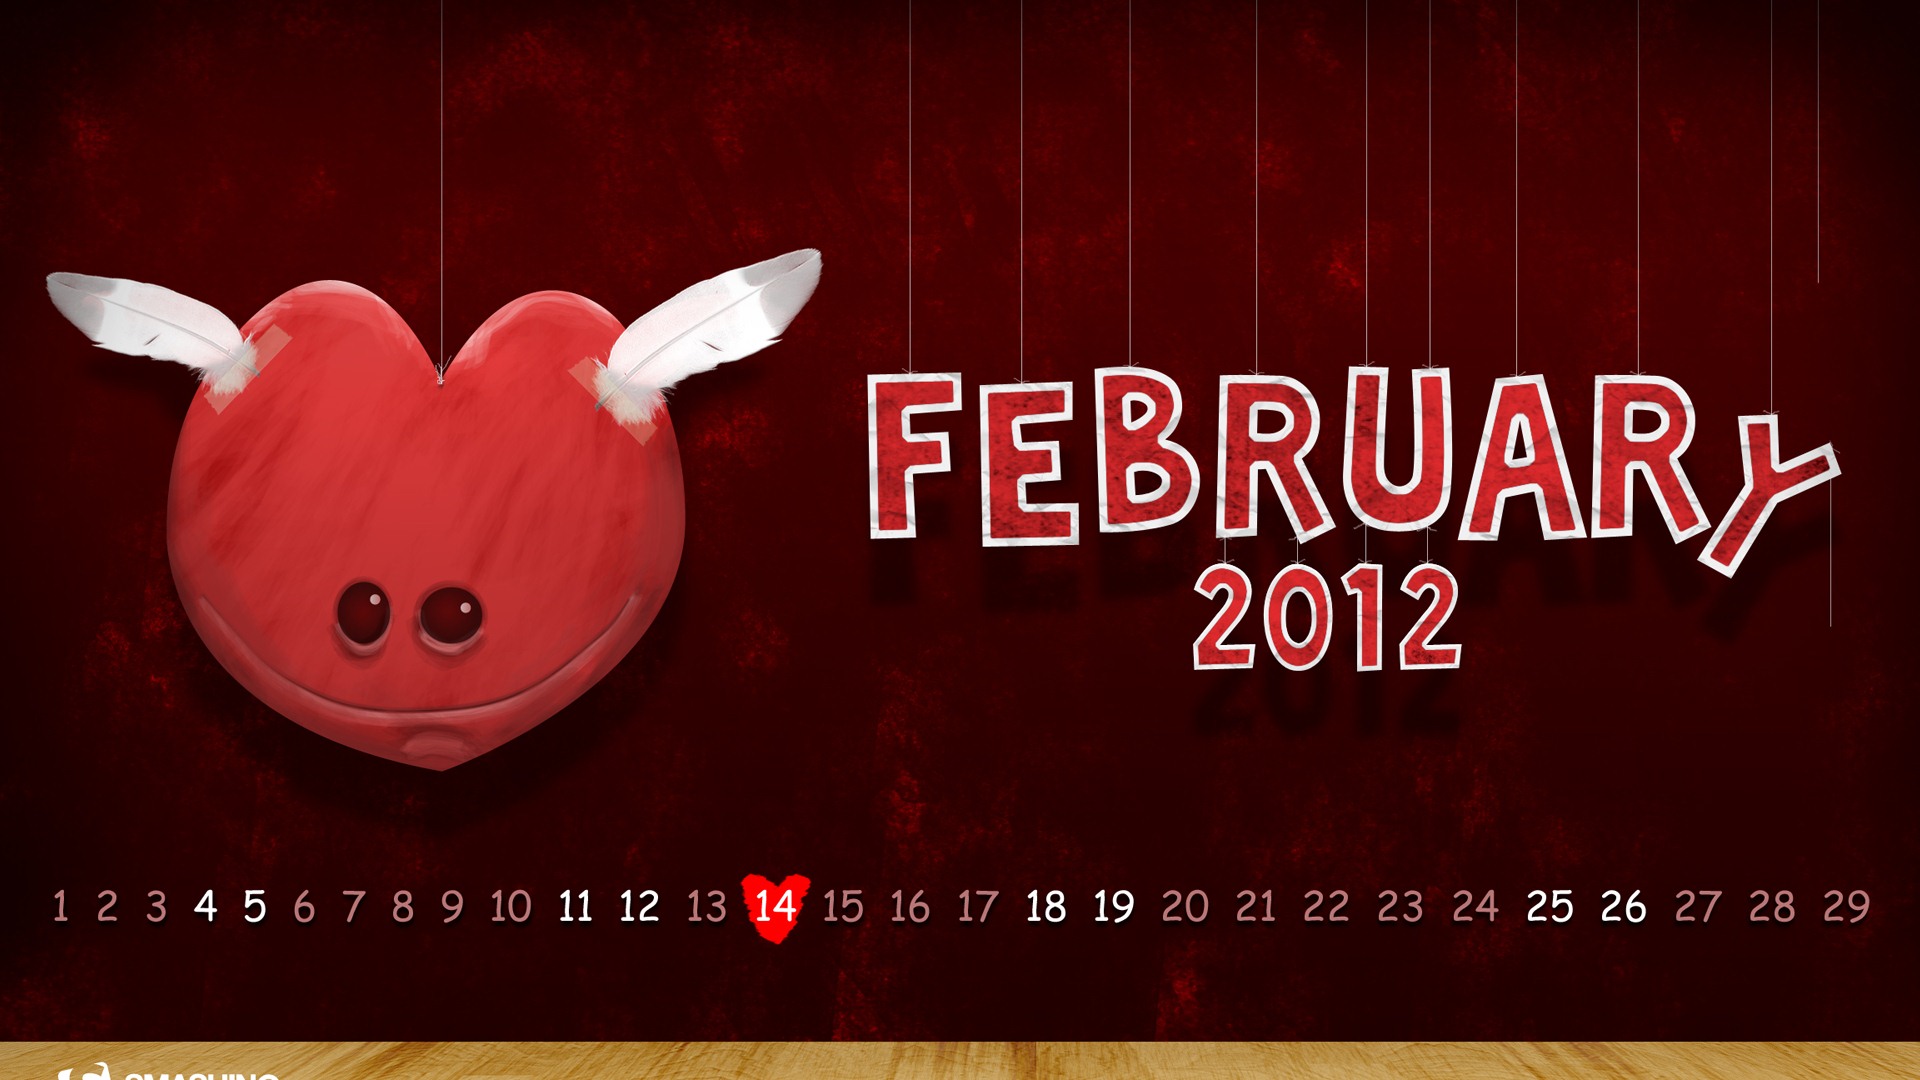 Calendario febrero 2012 fondos de pantalla (2) #2 - 1920x1080